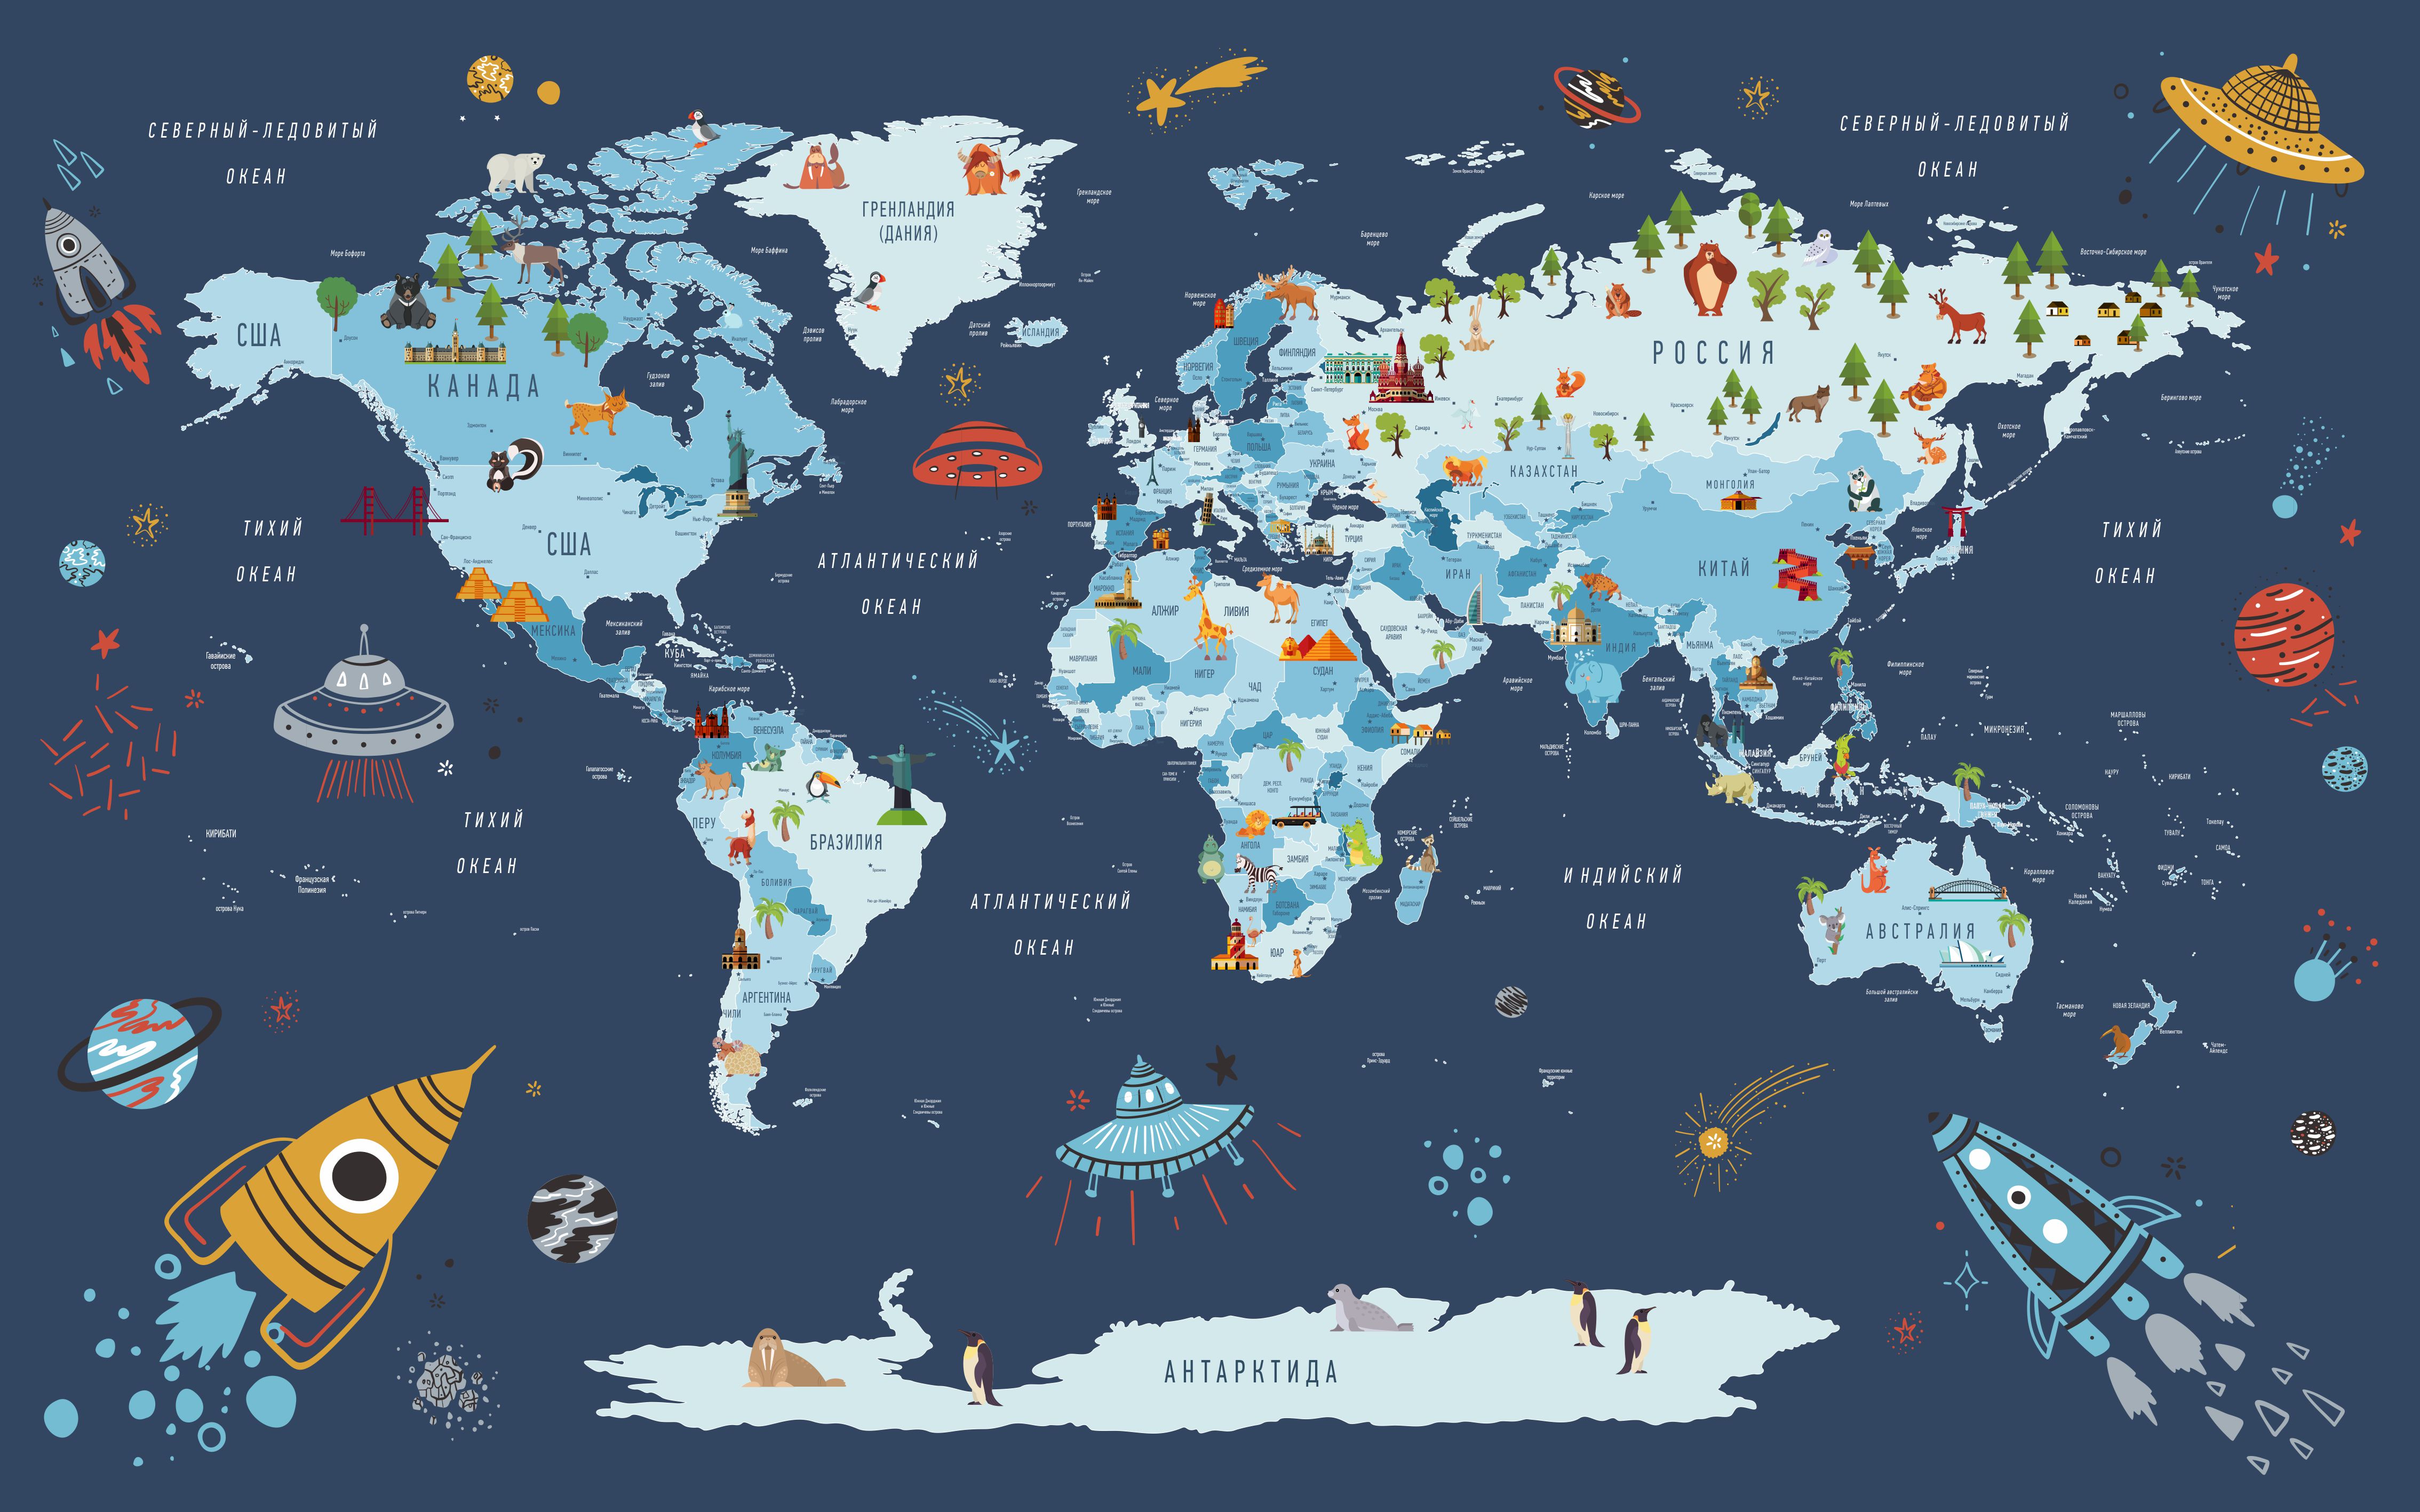 Karta. Карта мира. Детская карта мира. Карта планеты. Политическая карта мира для детей.